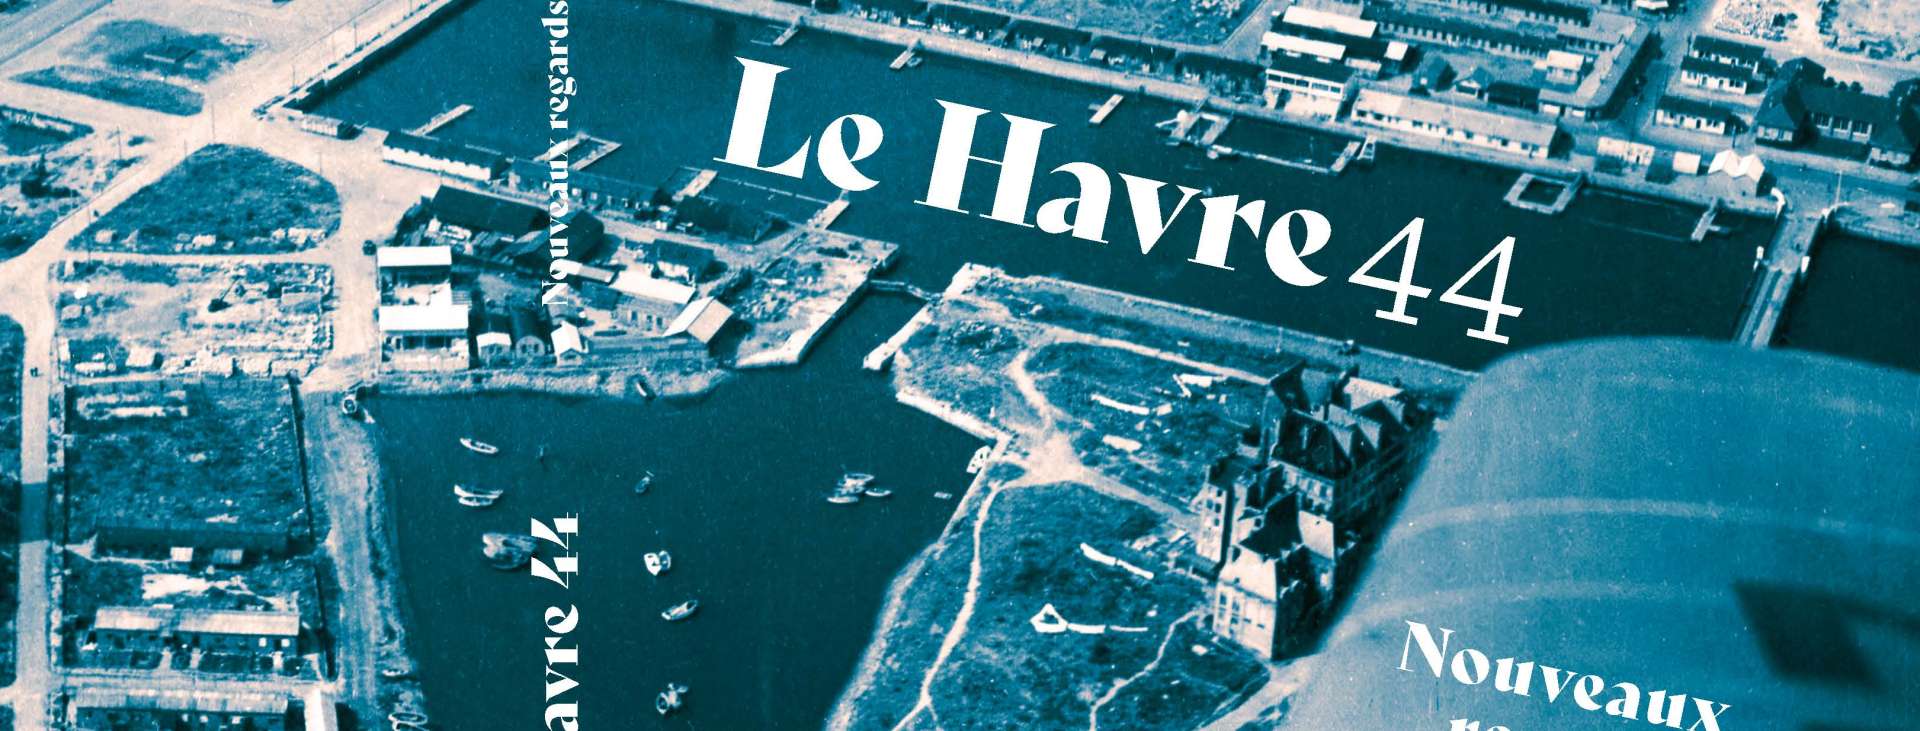 Le Havre 1944 nouveaux regards - Octopus